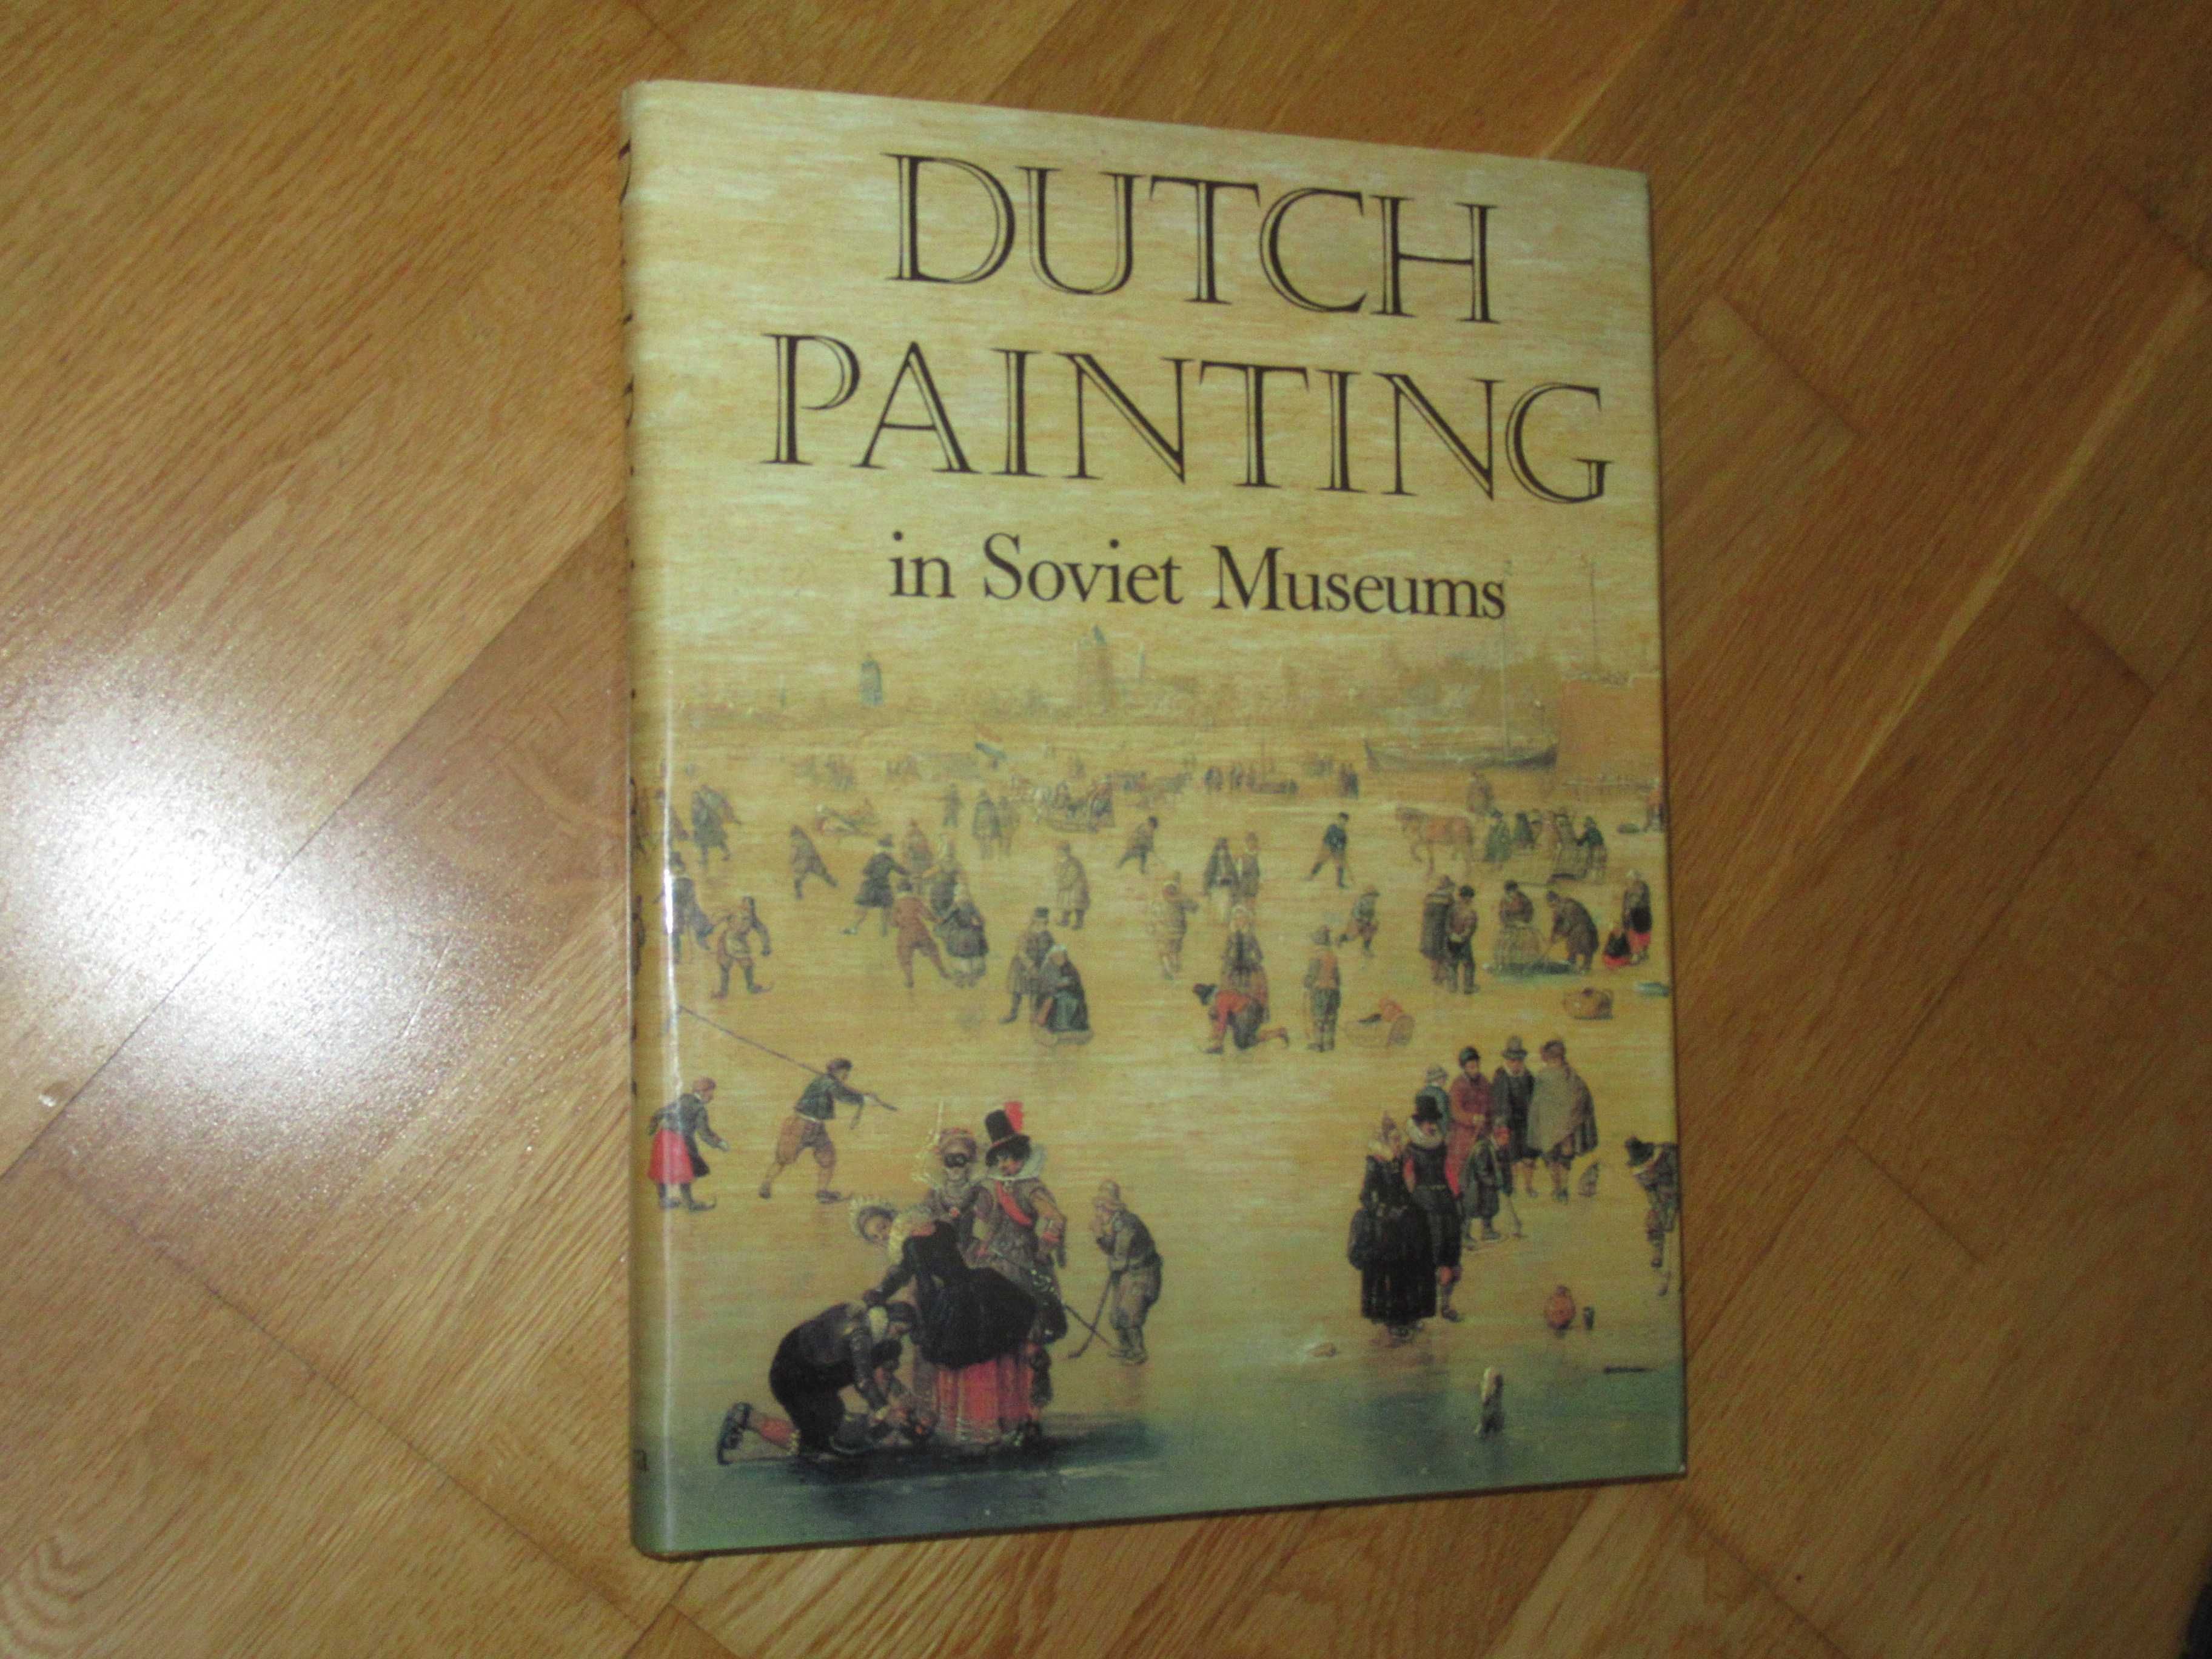 Голландская живопись в музеях Советского союза альбом на англ. языке